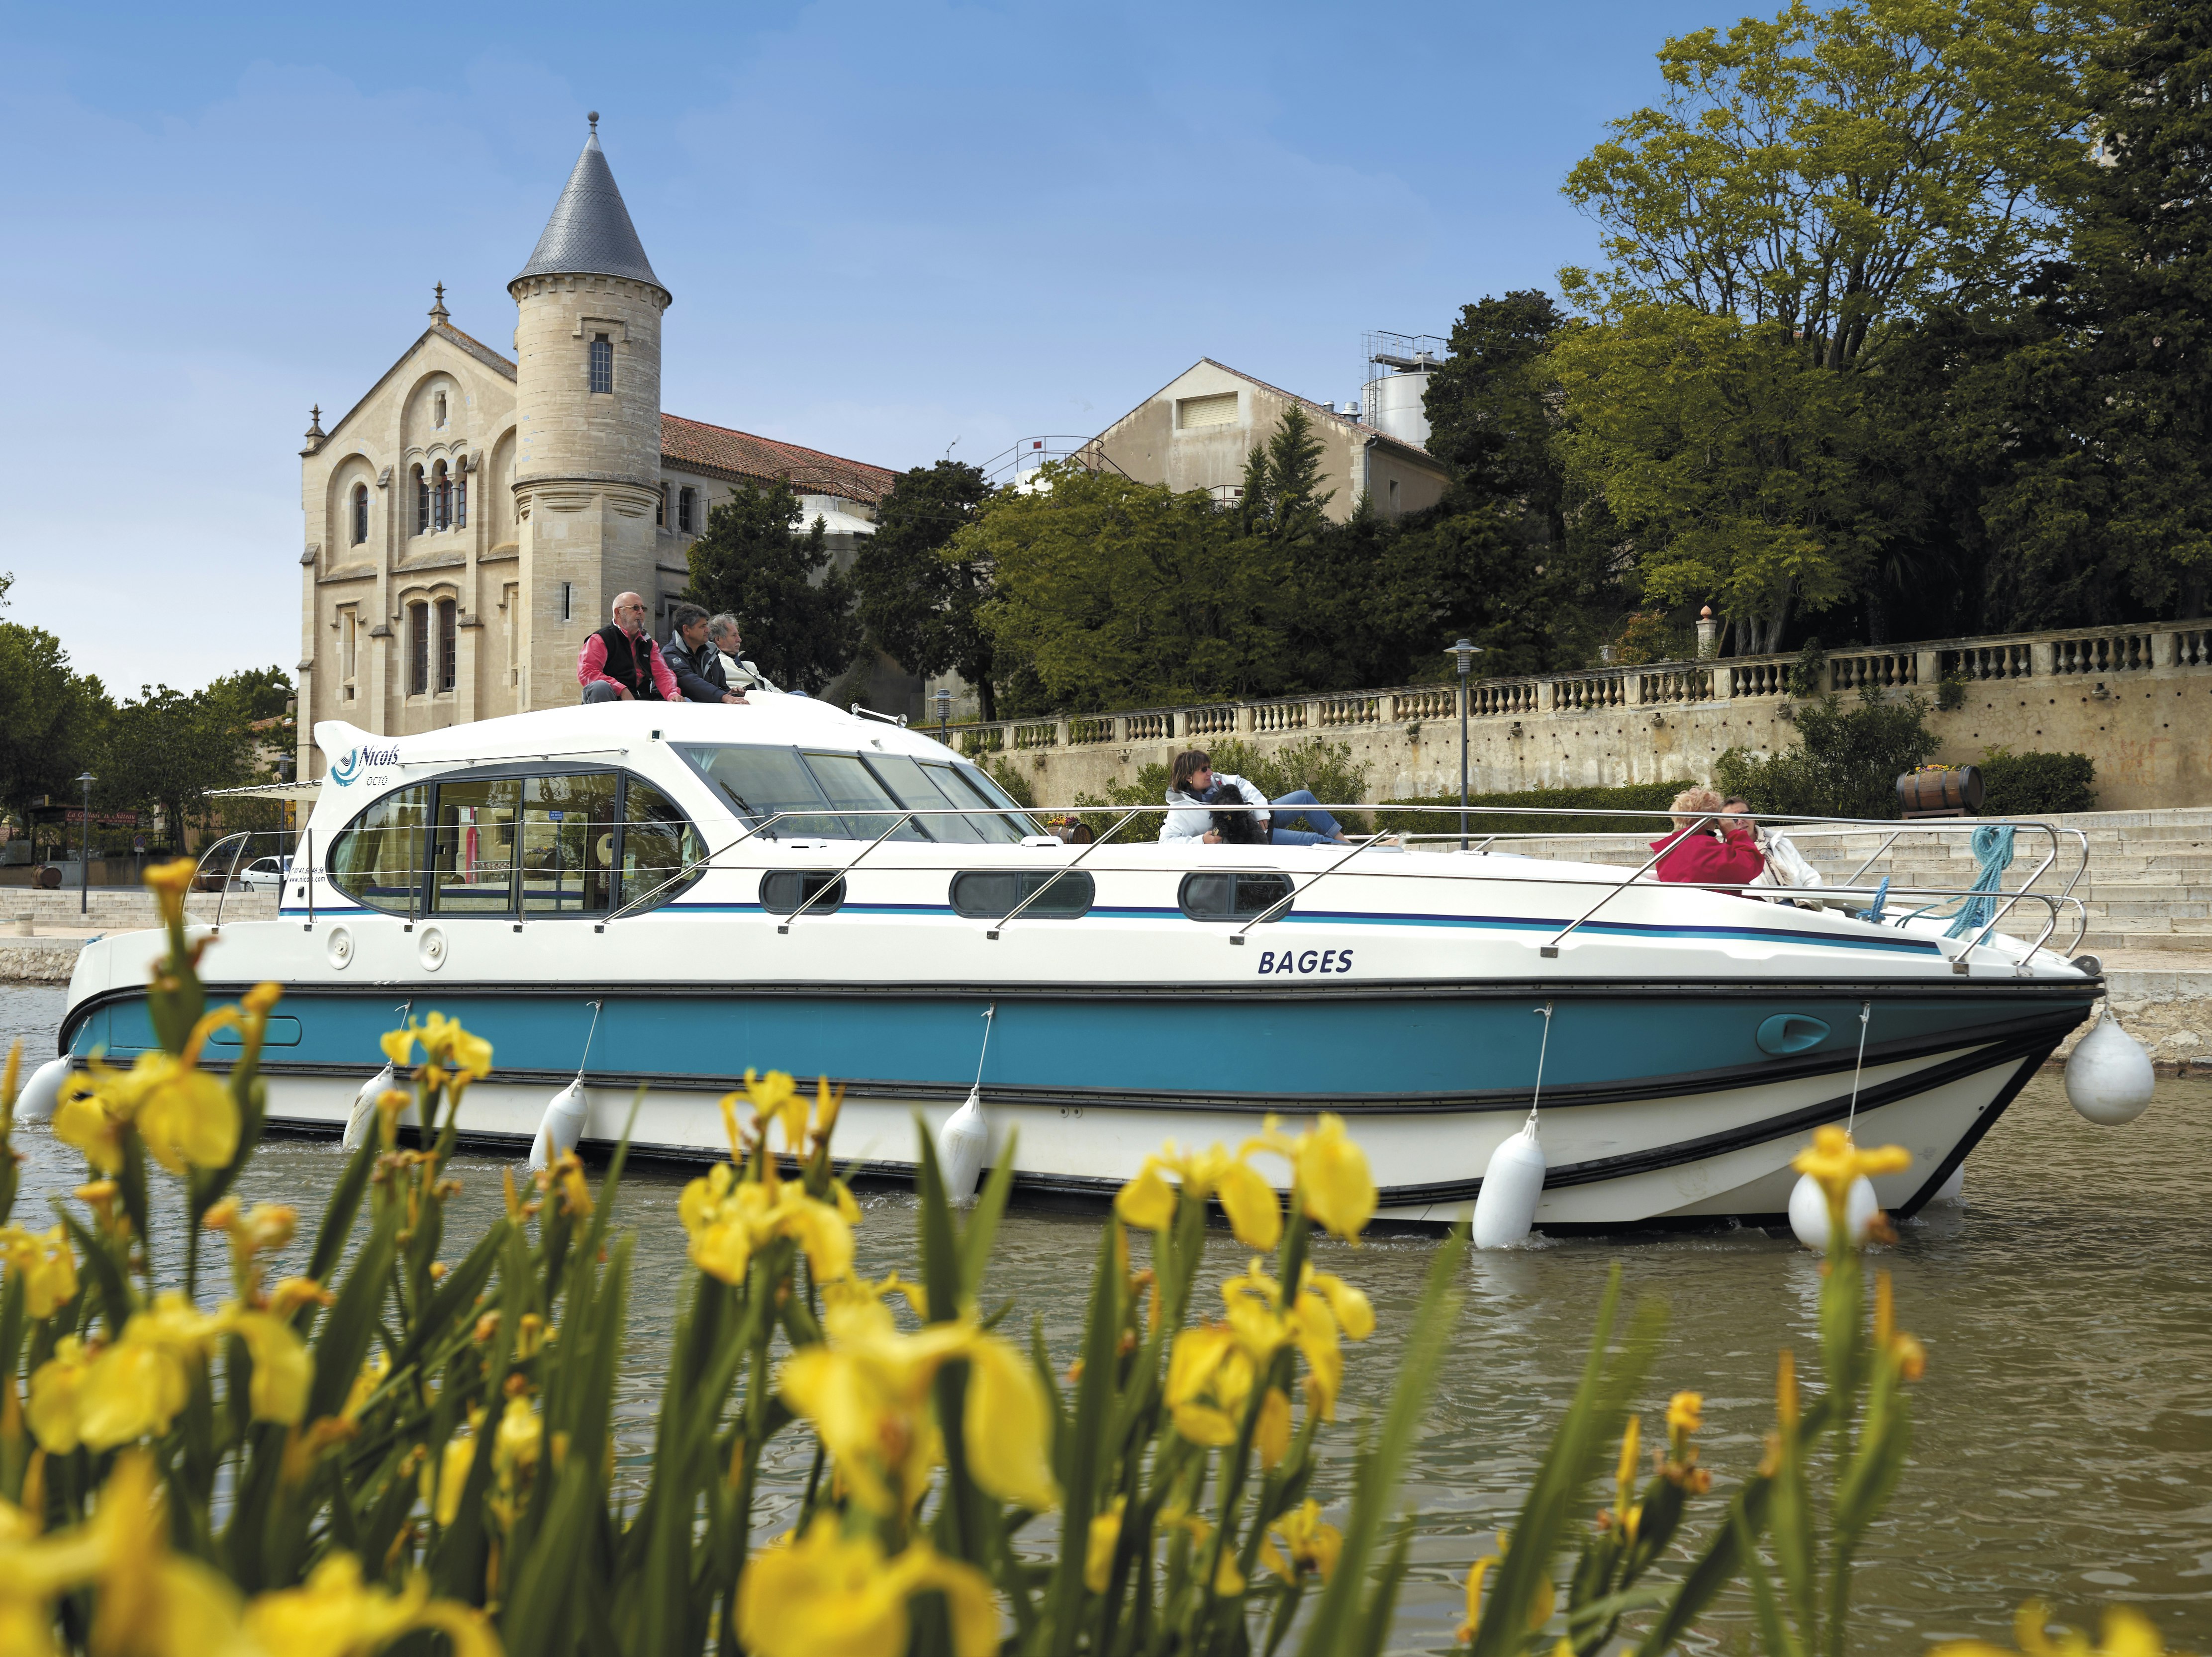 Gyvenamasis laivas plaukia pro istorinę pilį Prancūzijoje.